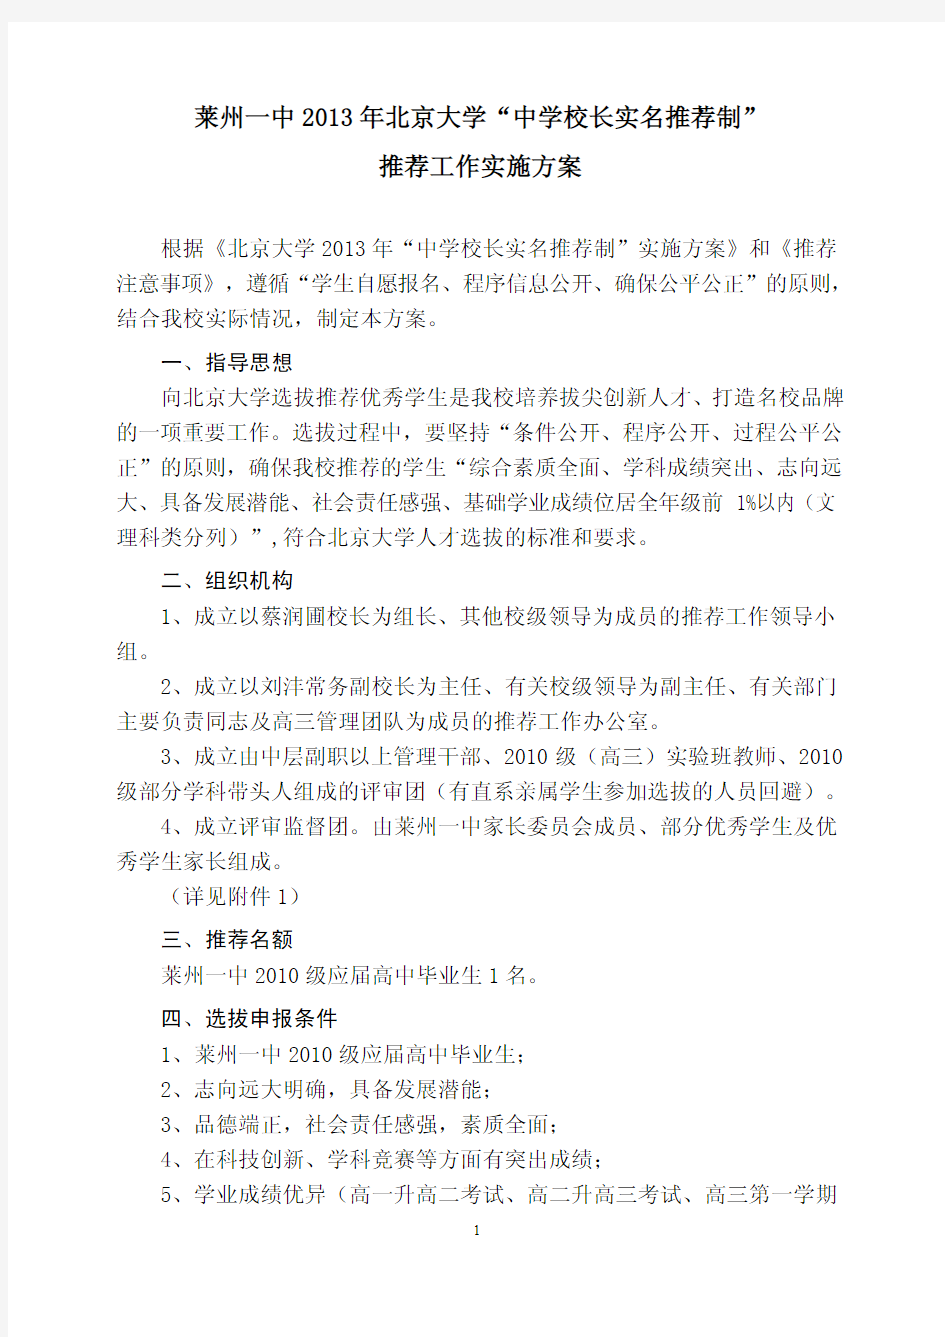 莱州一中 2013 年北京大学 “ 中学校长实名推荐制 ”